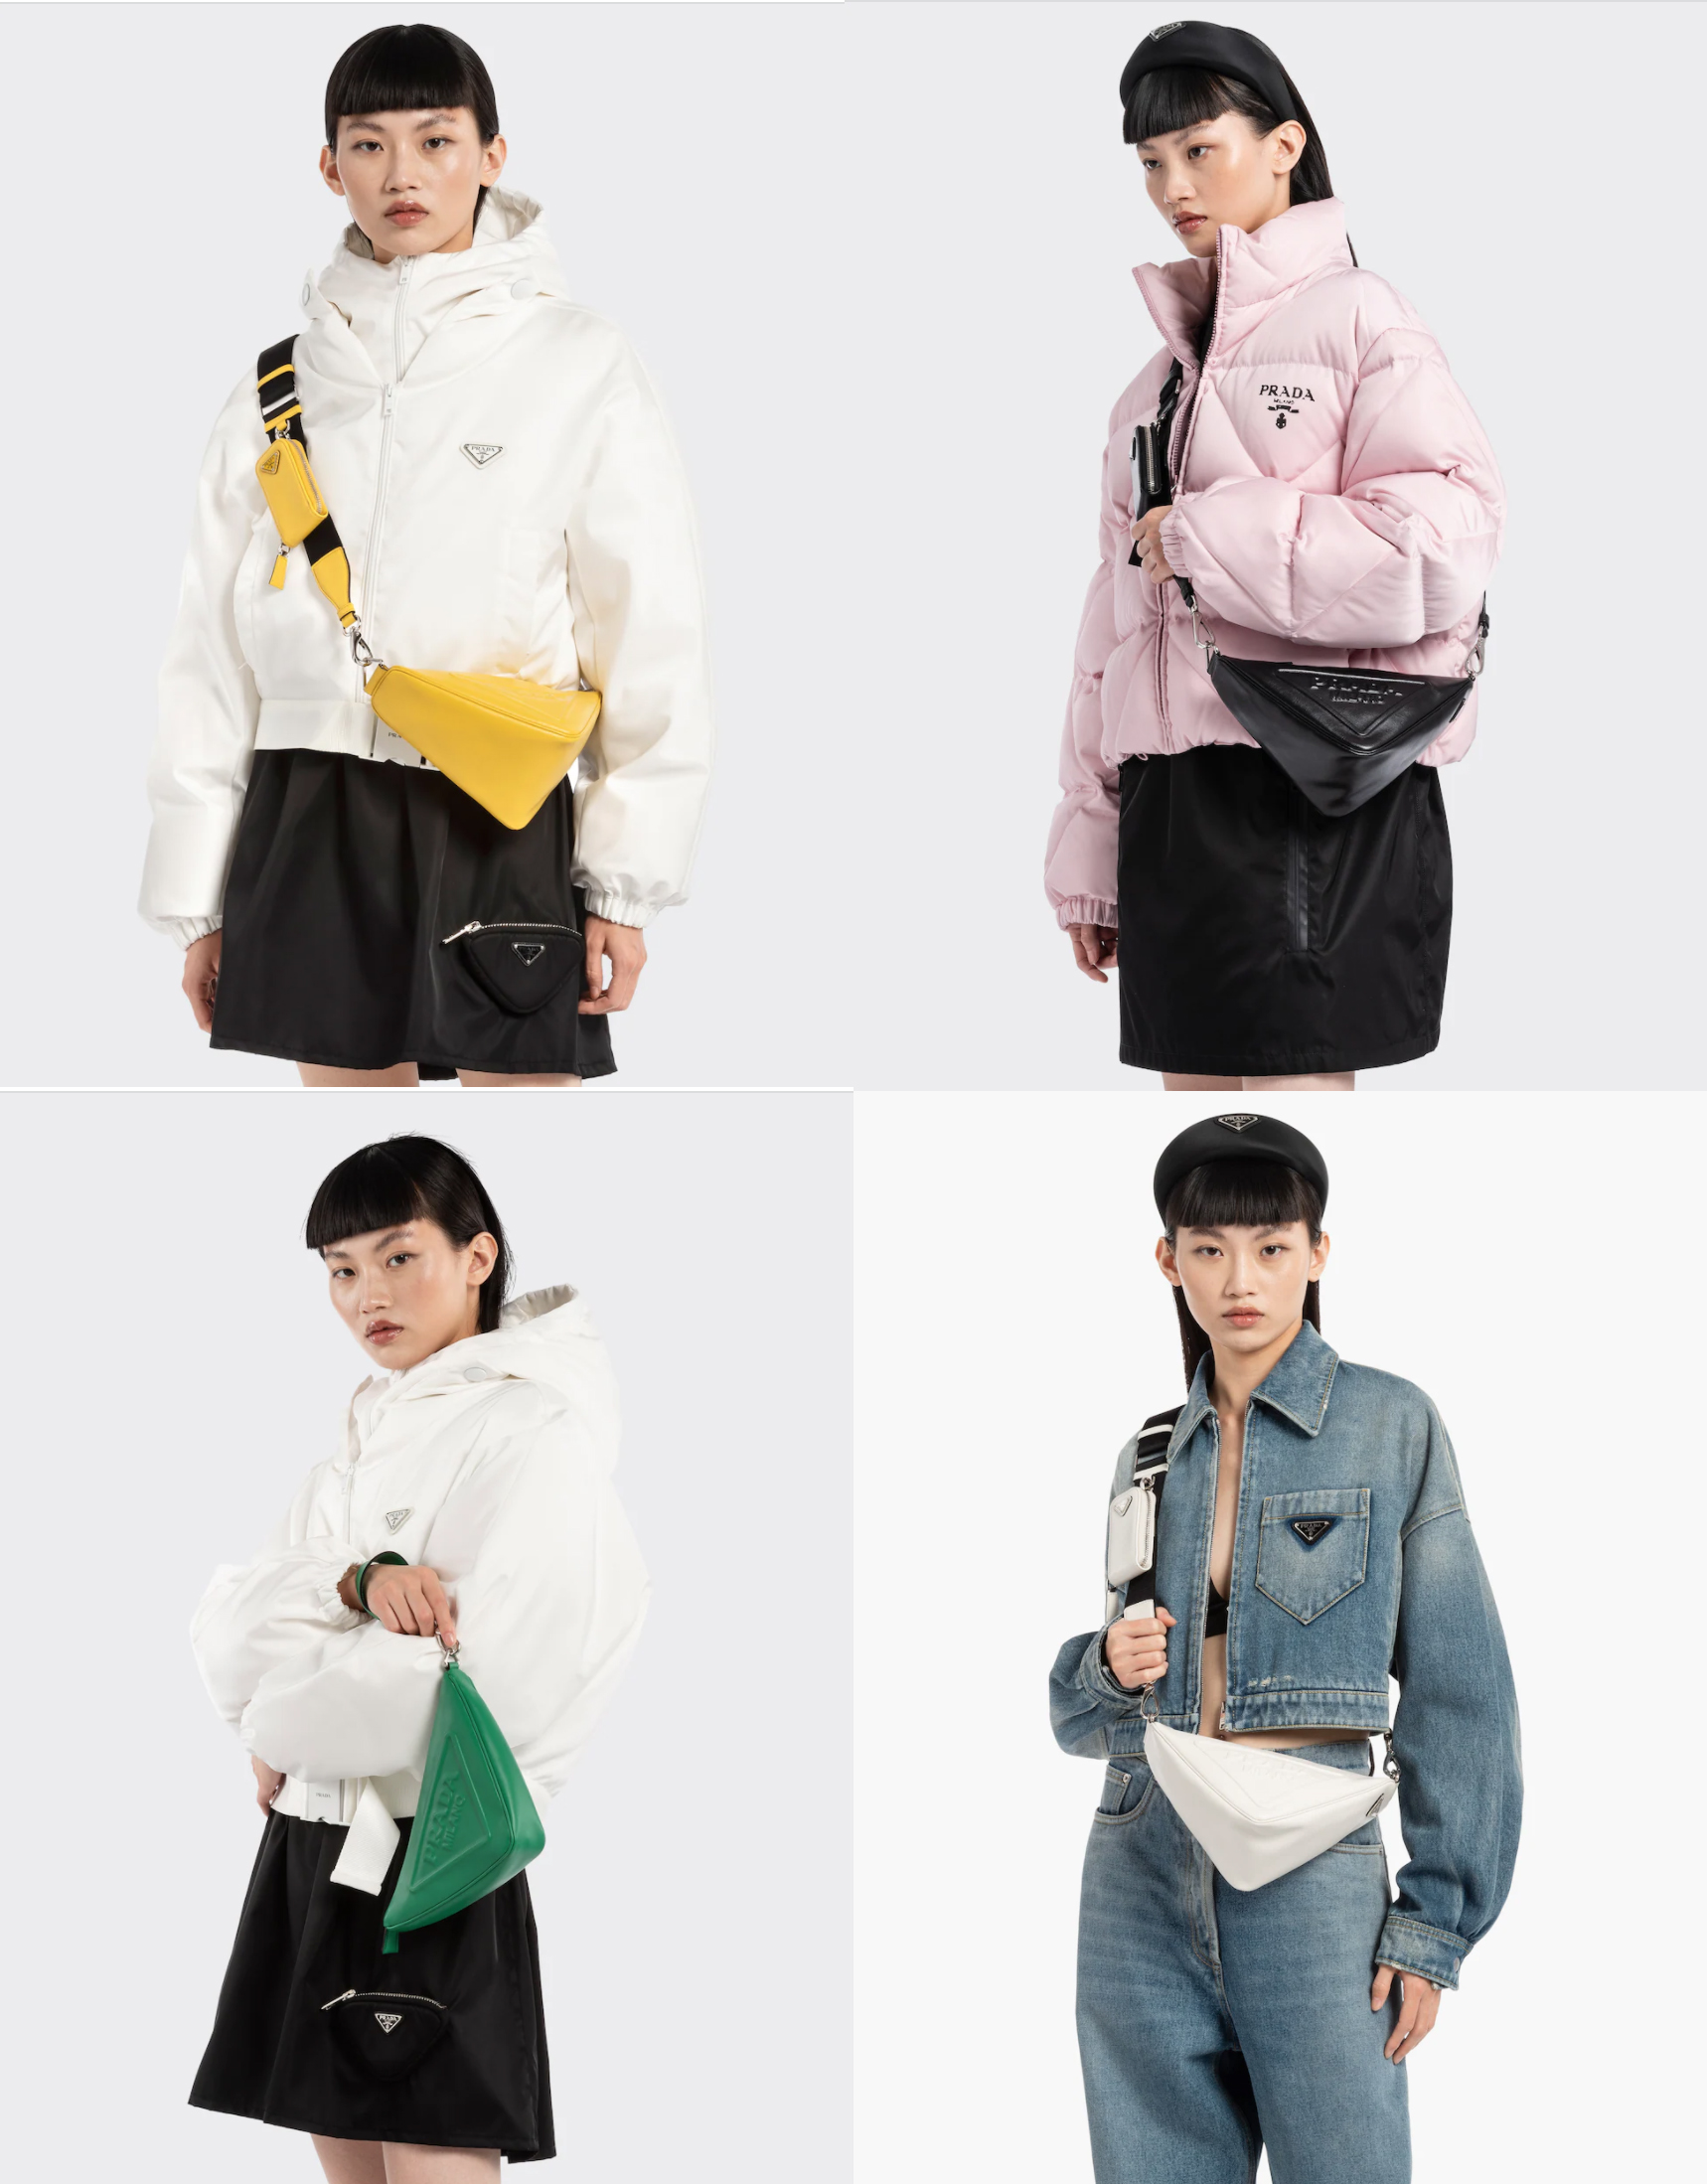 Mẫu túi Prada được lấy cảm hứng từ logo thương hiệu, thiết kế hình tam giác trẻ trung năng động với 4 màu sắc: trắng, đen, vàng, xanh lá...